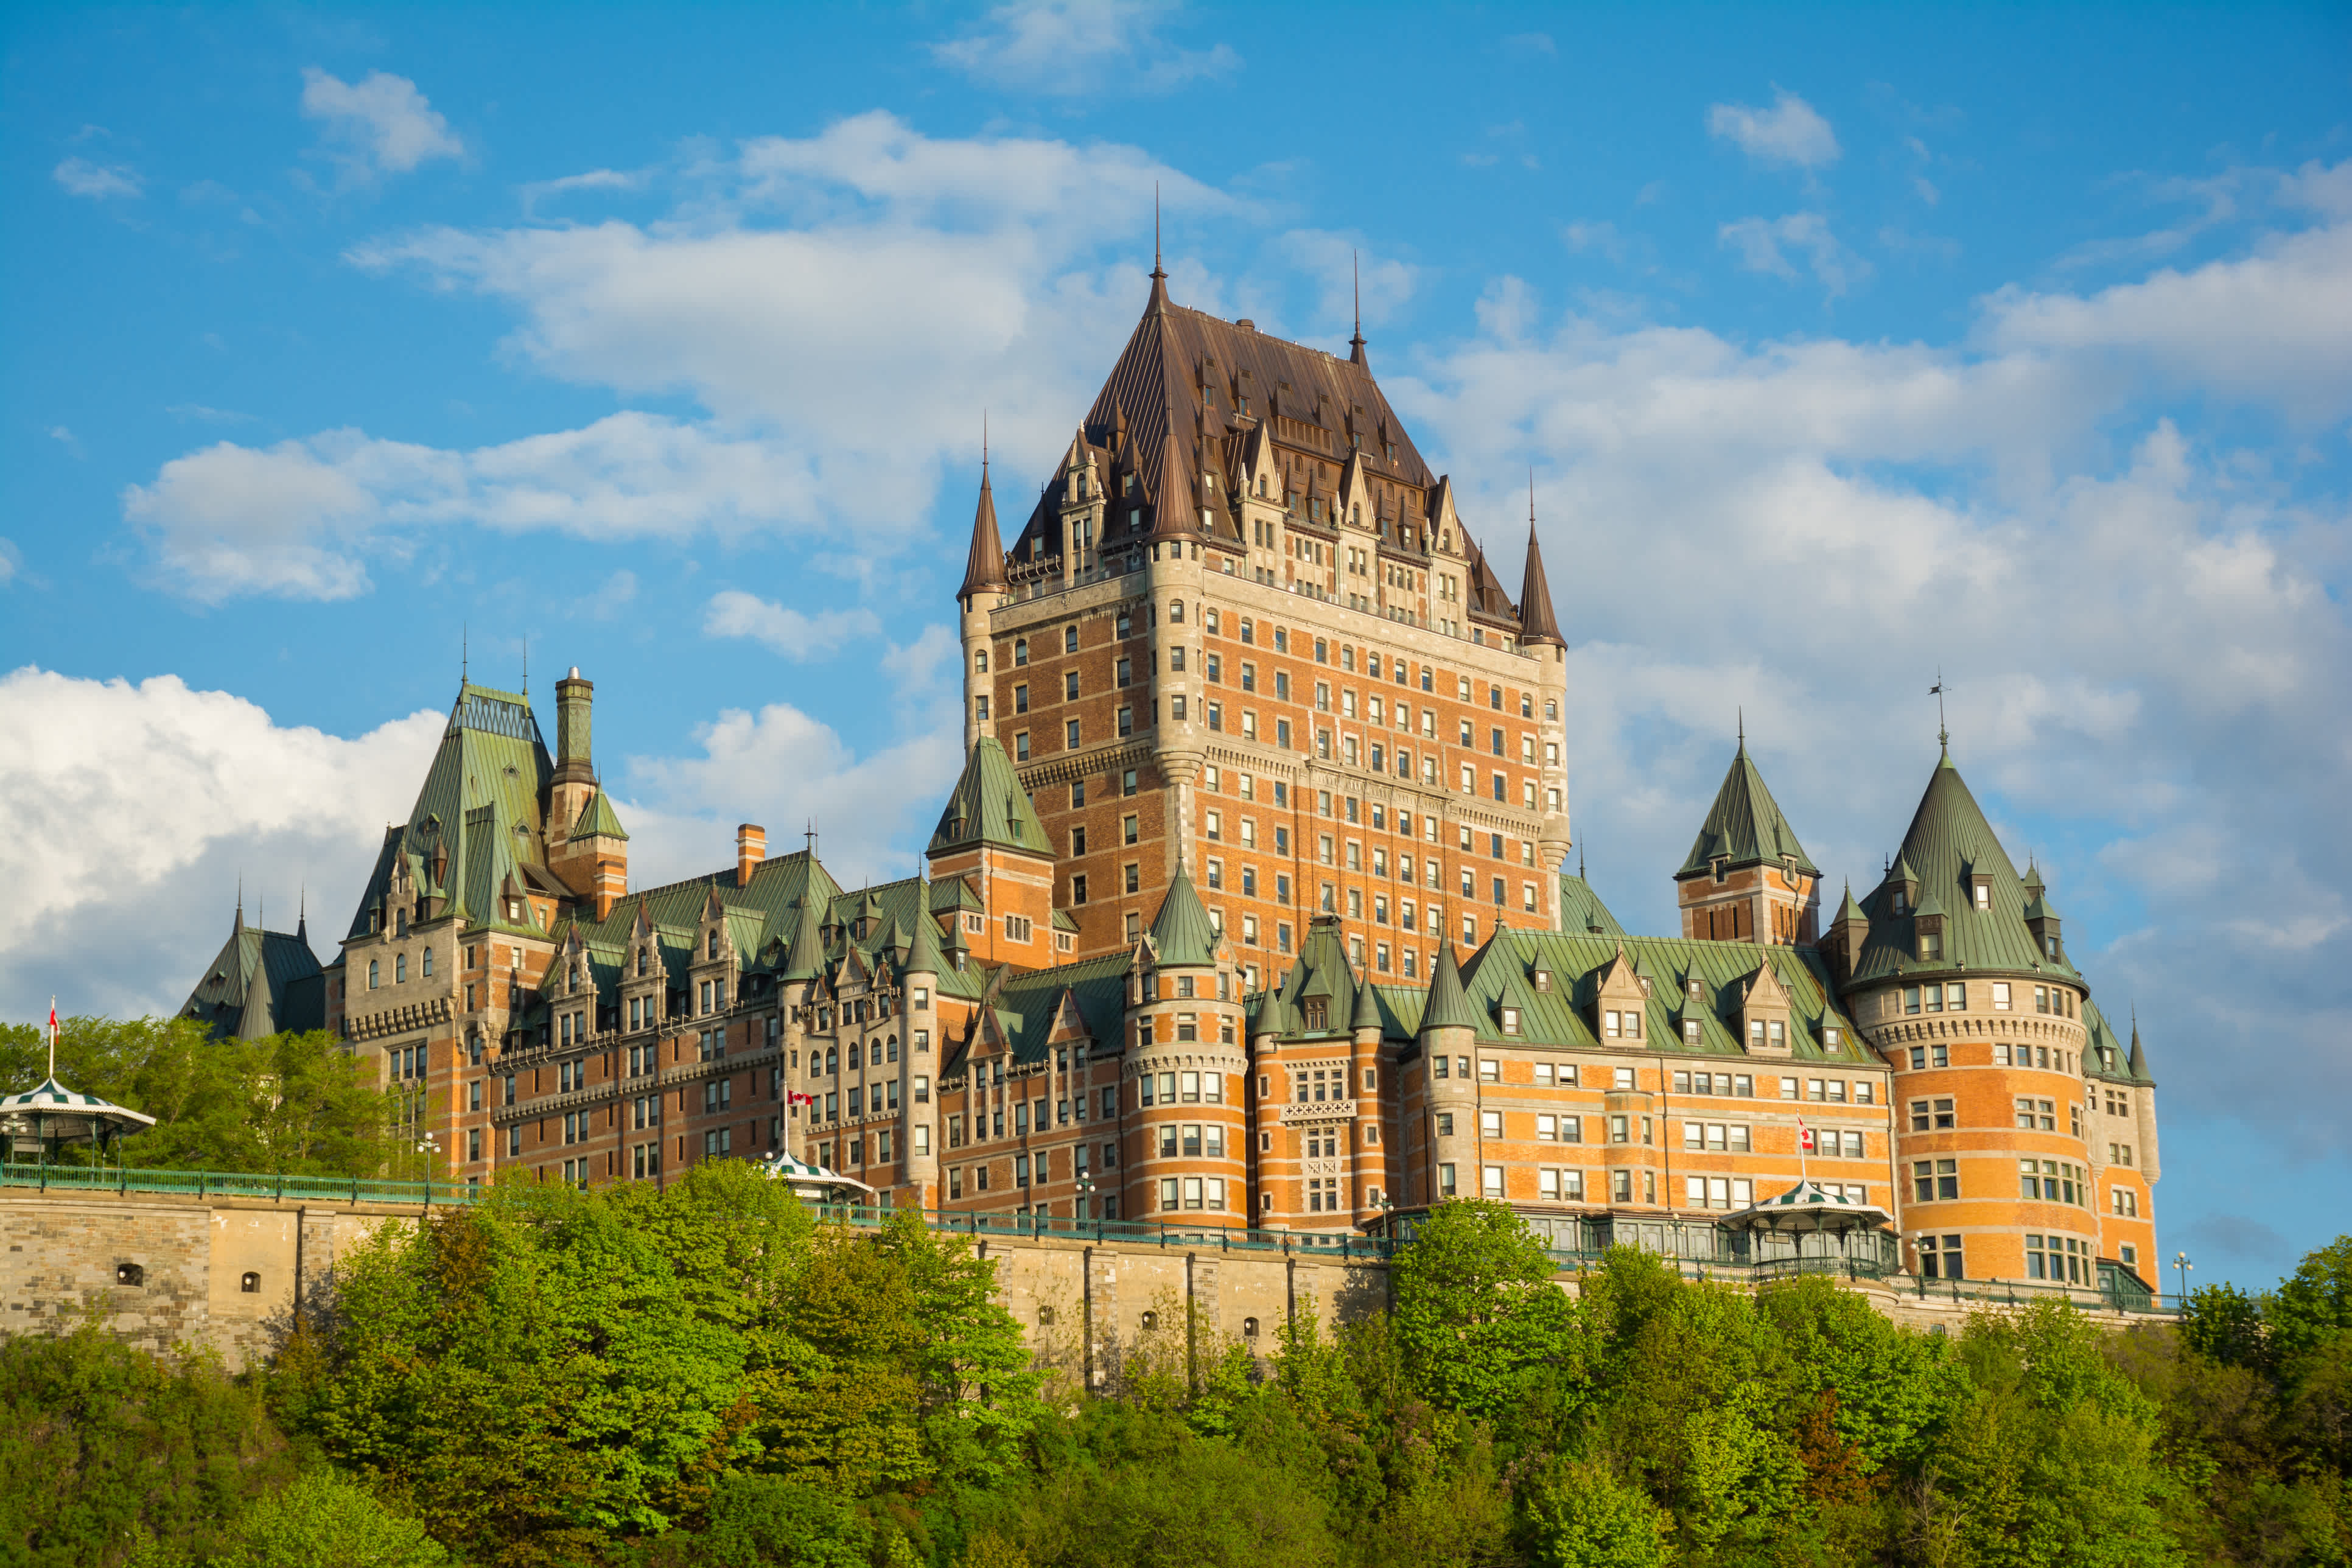 Découvrez l'imposant château Frontenac au coeur du Vieux Québec pendant votre voyage au Canada.